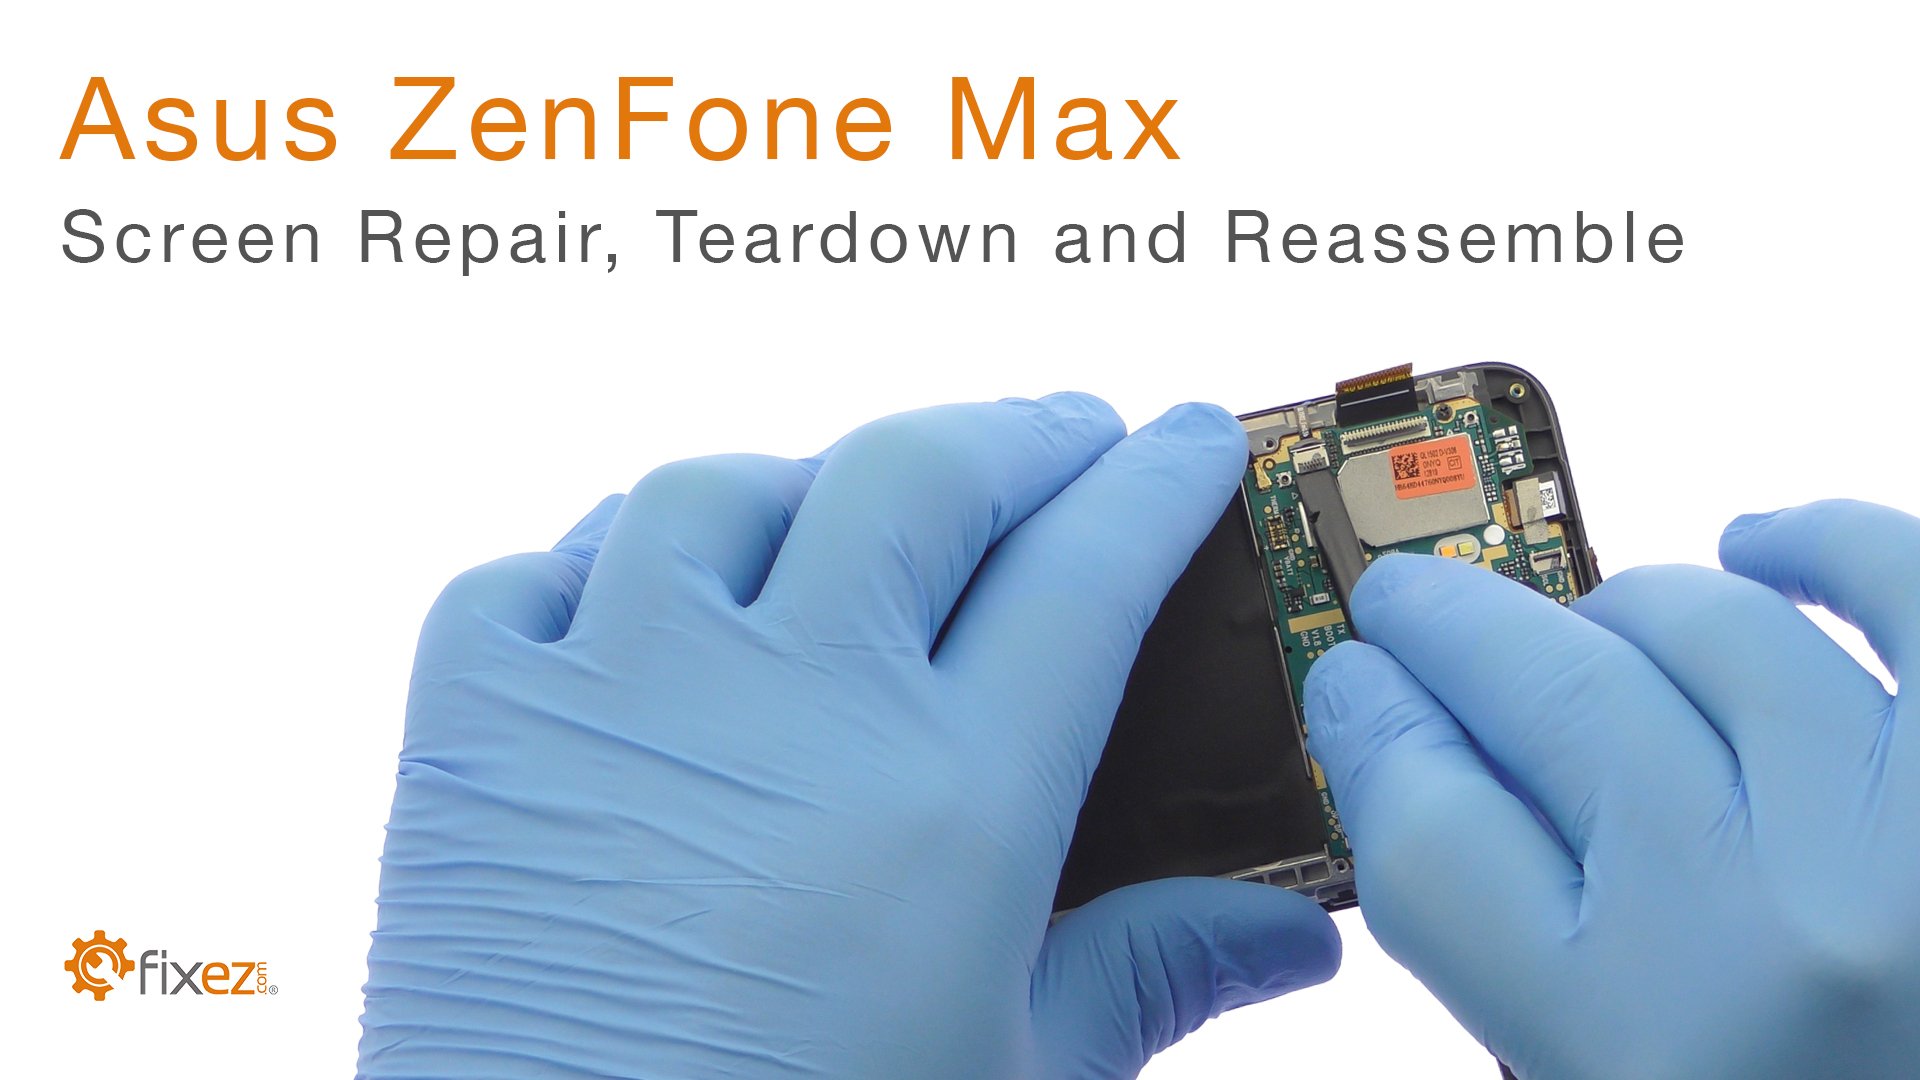 Asus ZenFone Max Screen Repair, Teardown and Reassemble